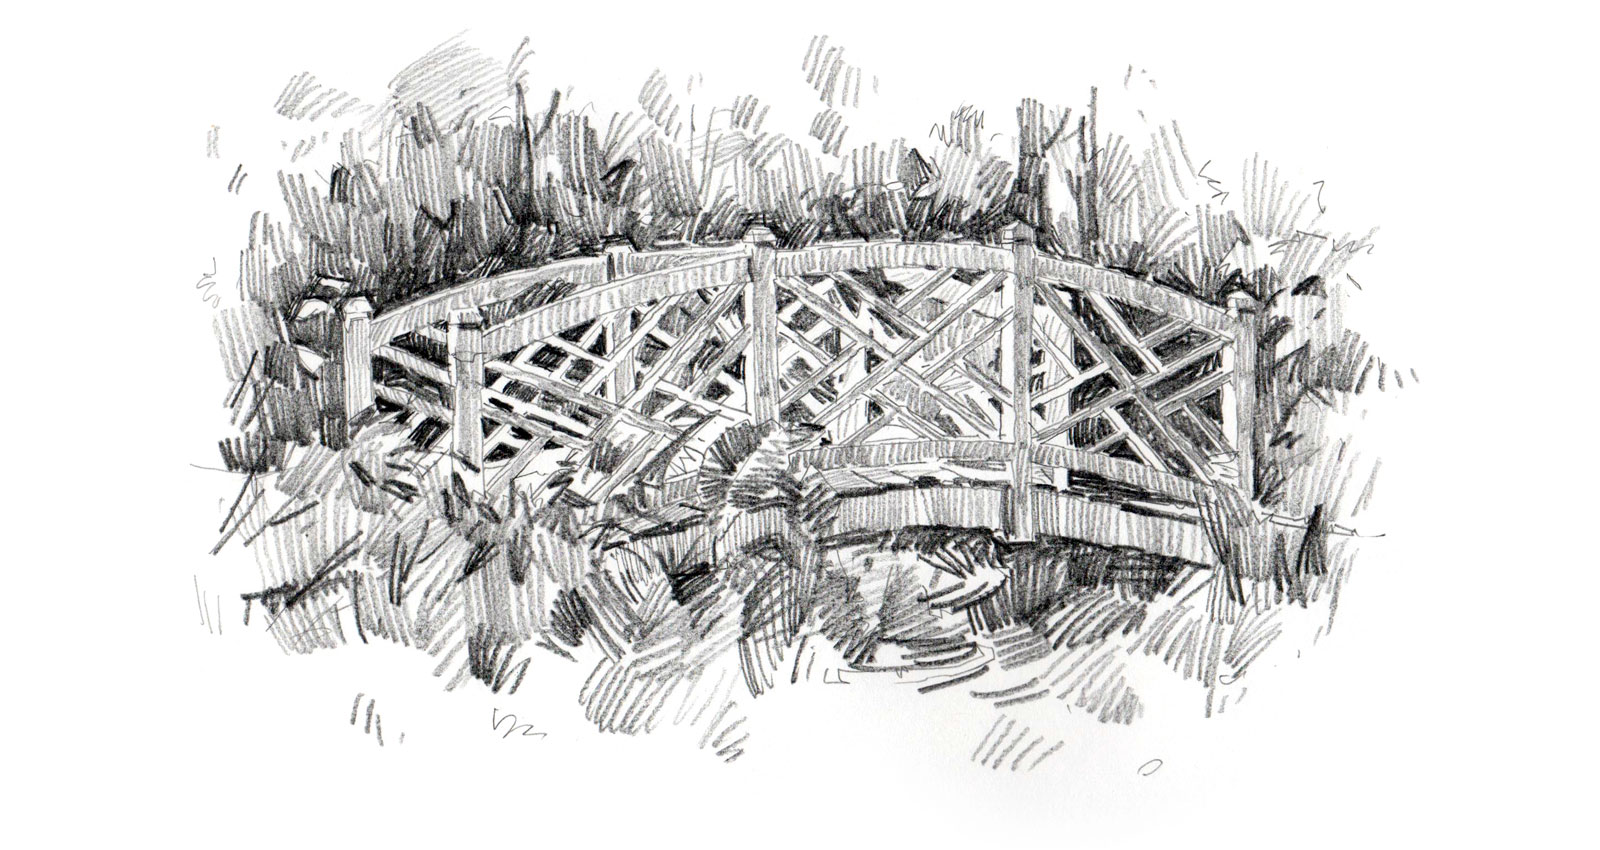 Lattice Bridge